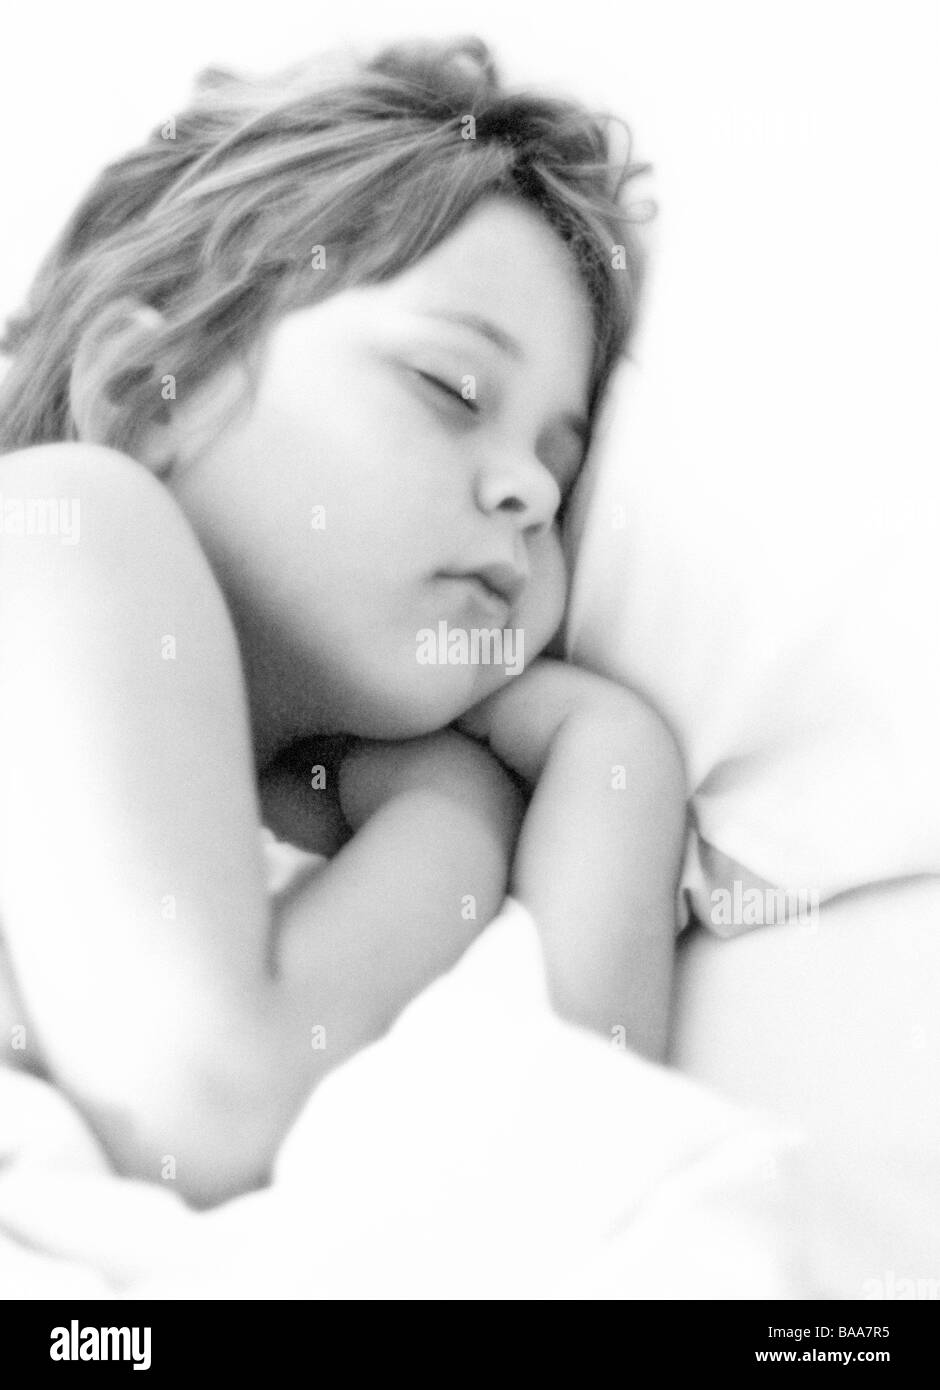 Young girl asleep Stock Photo